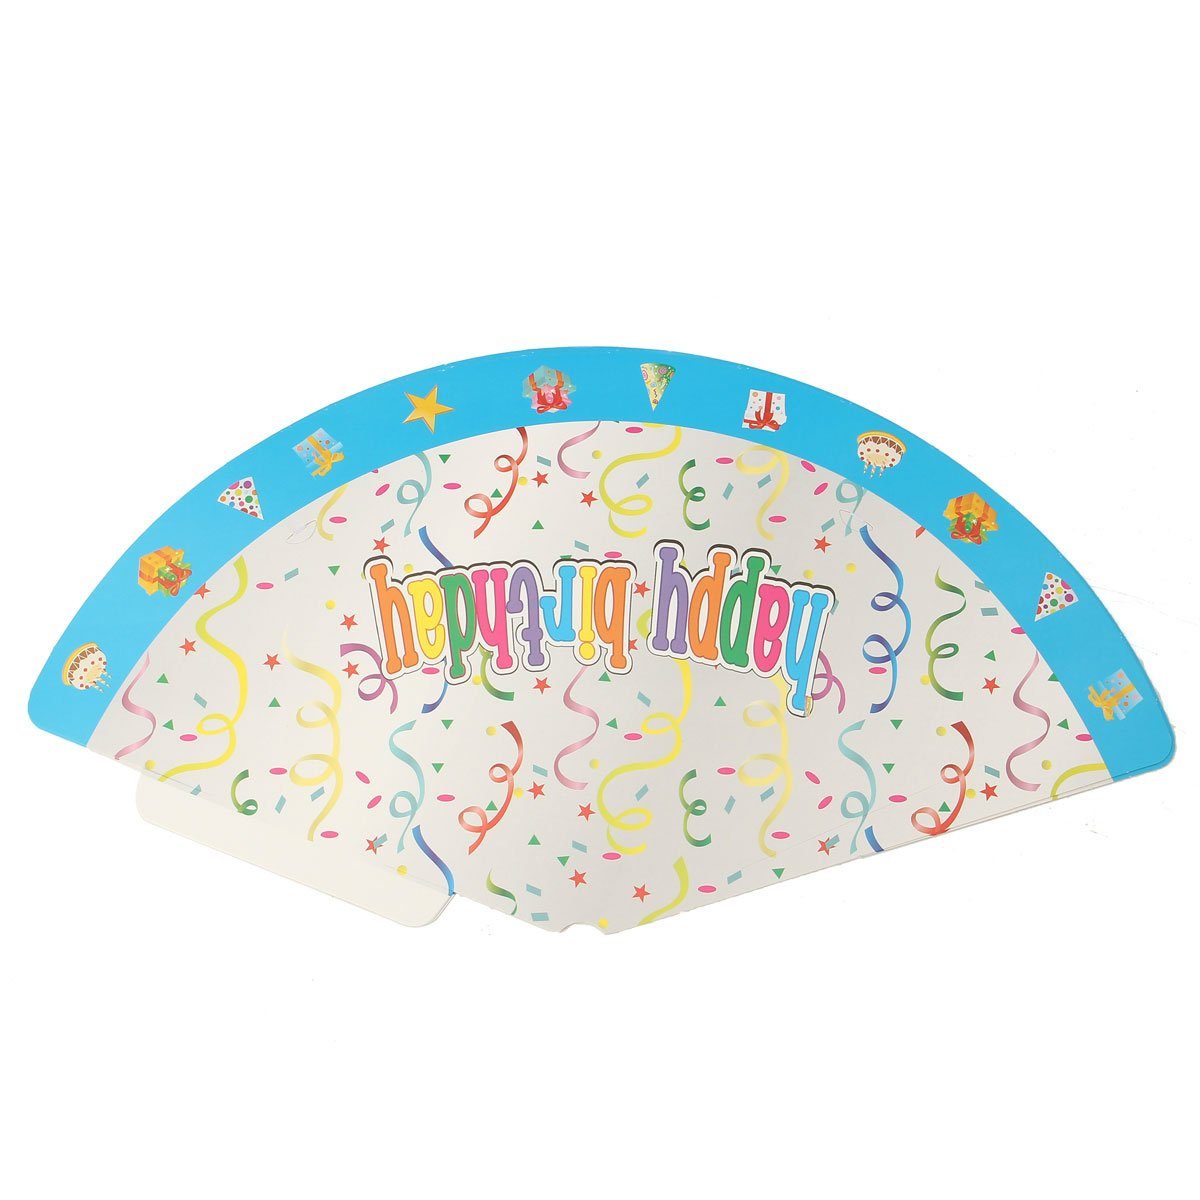 8er Papierdekoration, MAEREX für Set Kindergeburtstage bunte Lustige Partyhüte 19,3cm